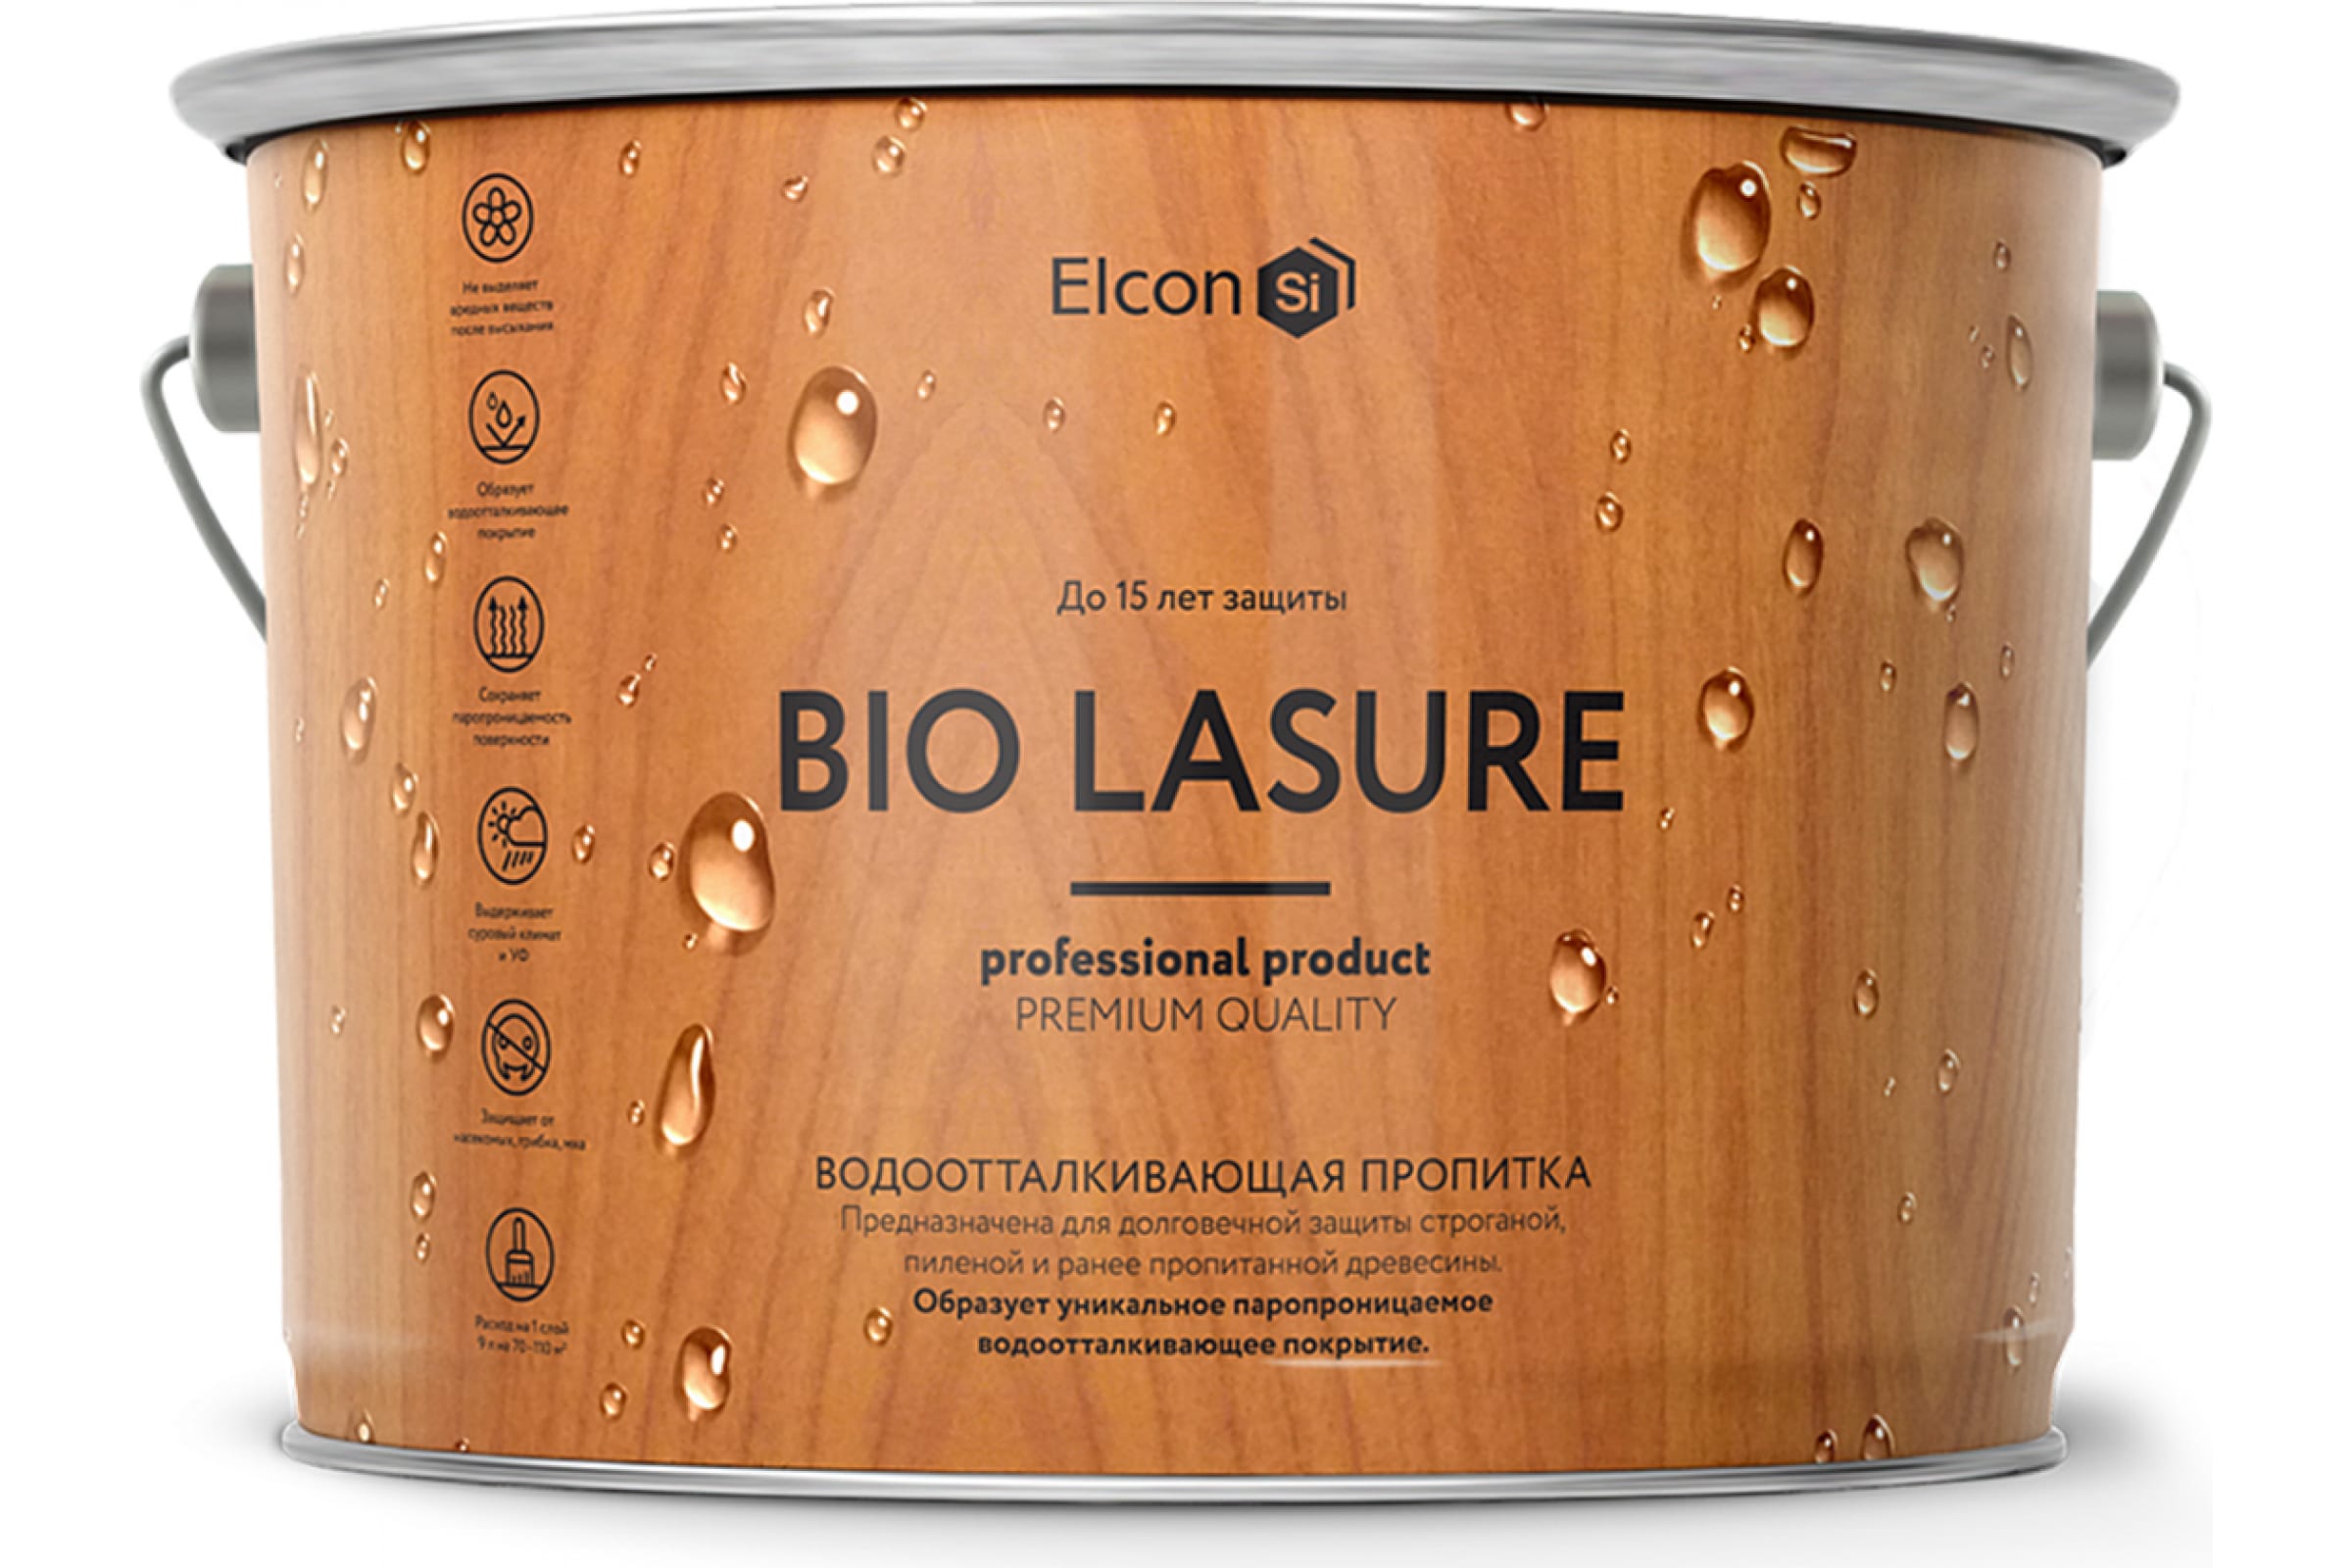 Elcon Bio Lasure водоотталкивающая пропитка для дерева, орех; 2 л, 00-00461950 пропитка для дерева водоотталкивающая elcon bio lasure 2 л бес ная